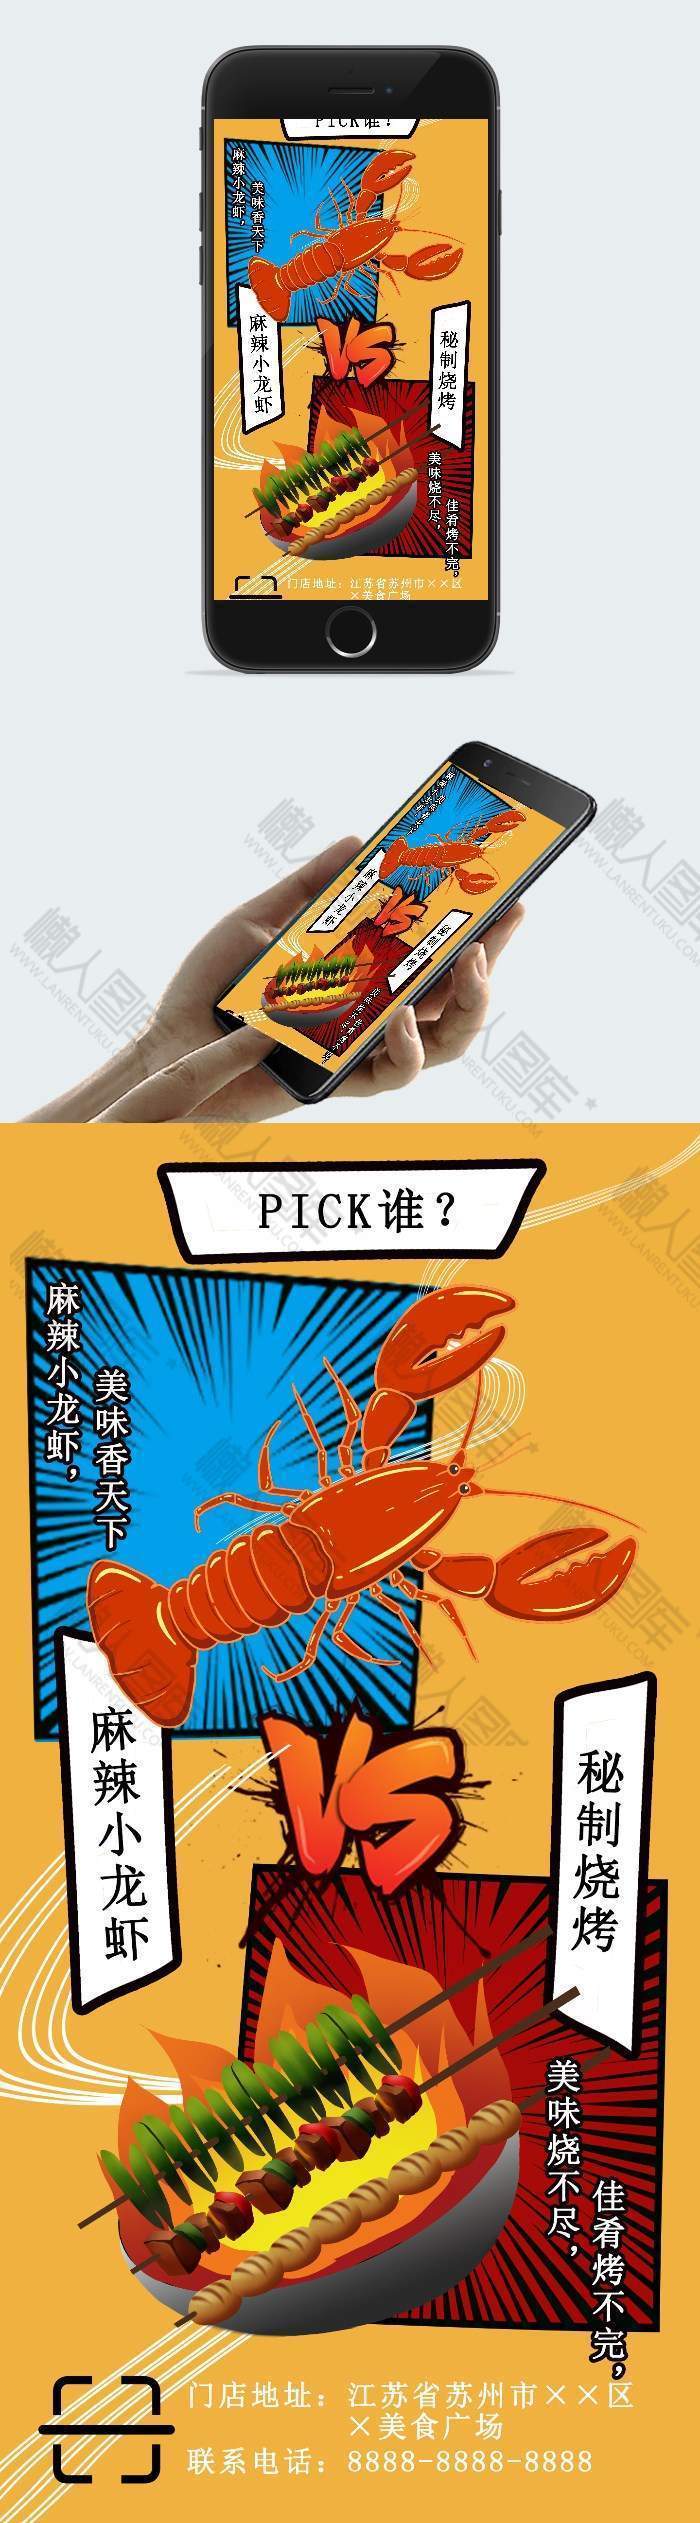 特色美食小龙虾烧烤手机海报